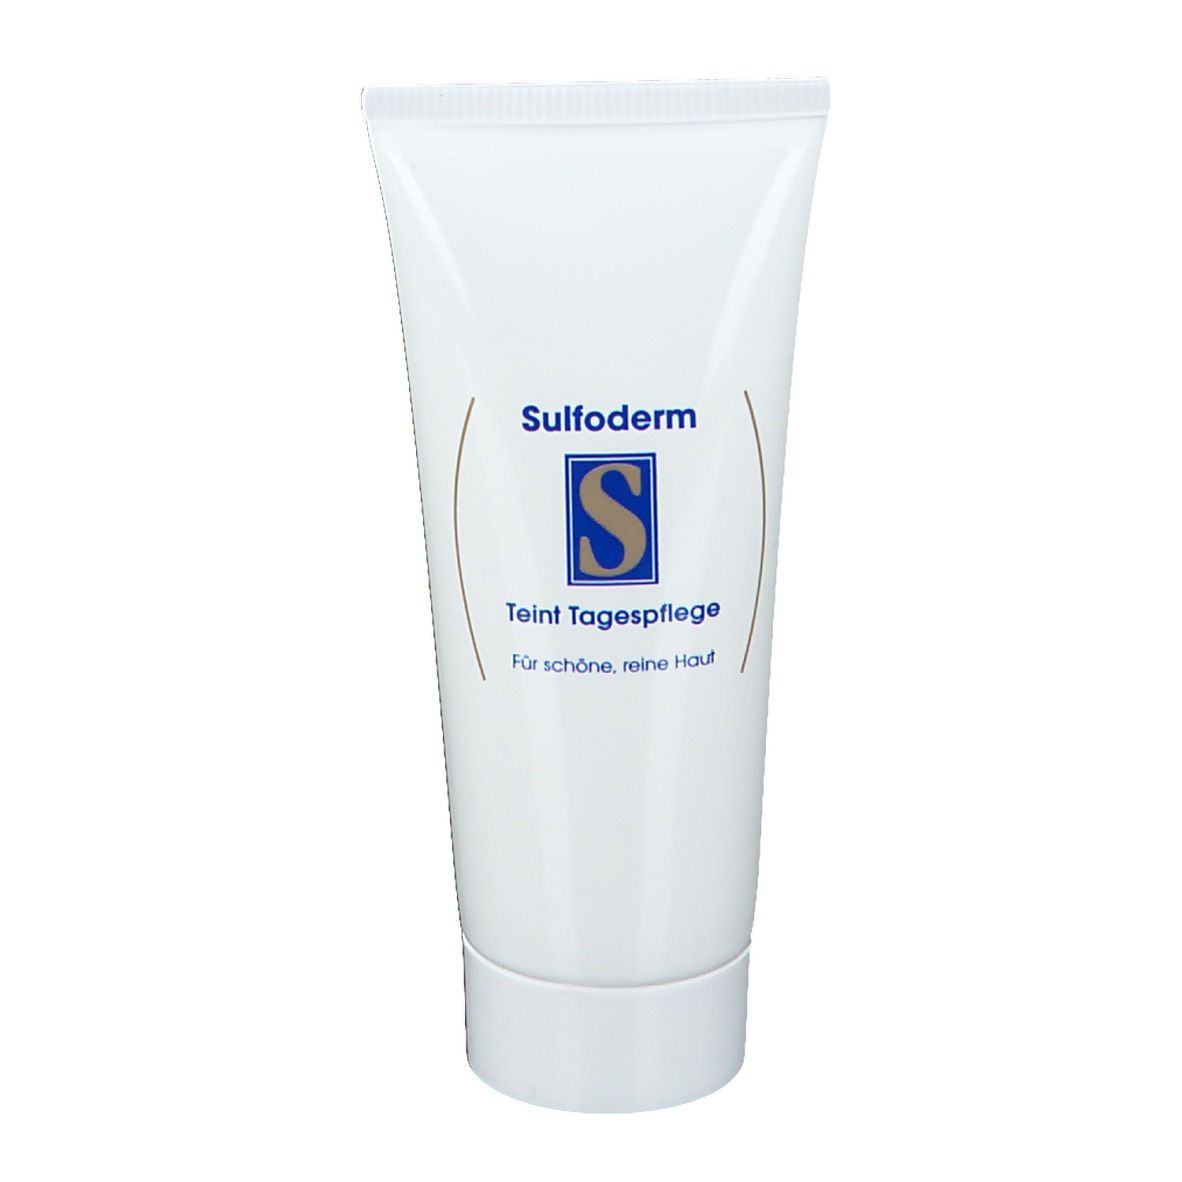 Sulfoderm® S Teint Tagespflege parfümfrei